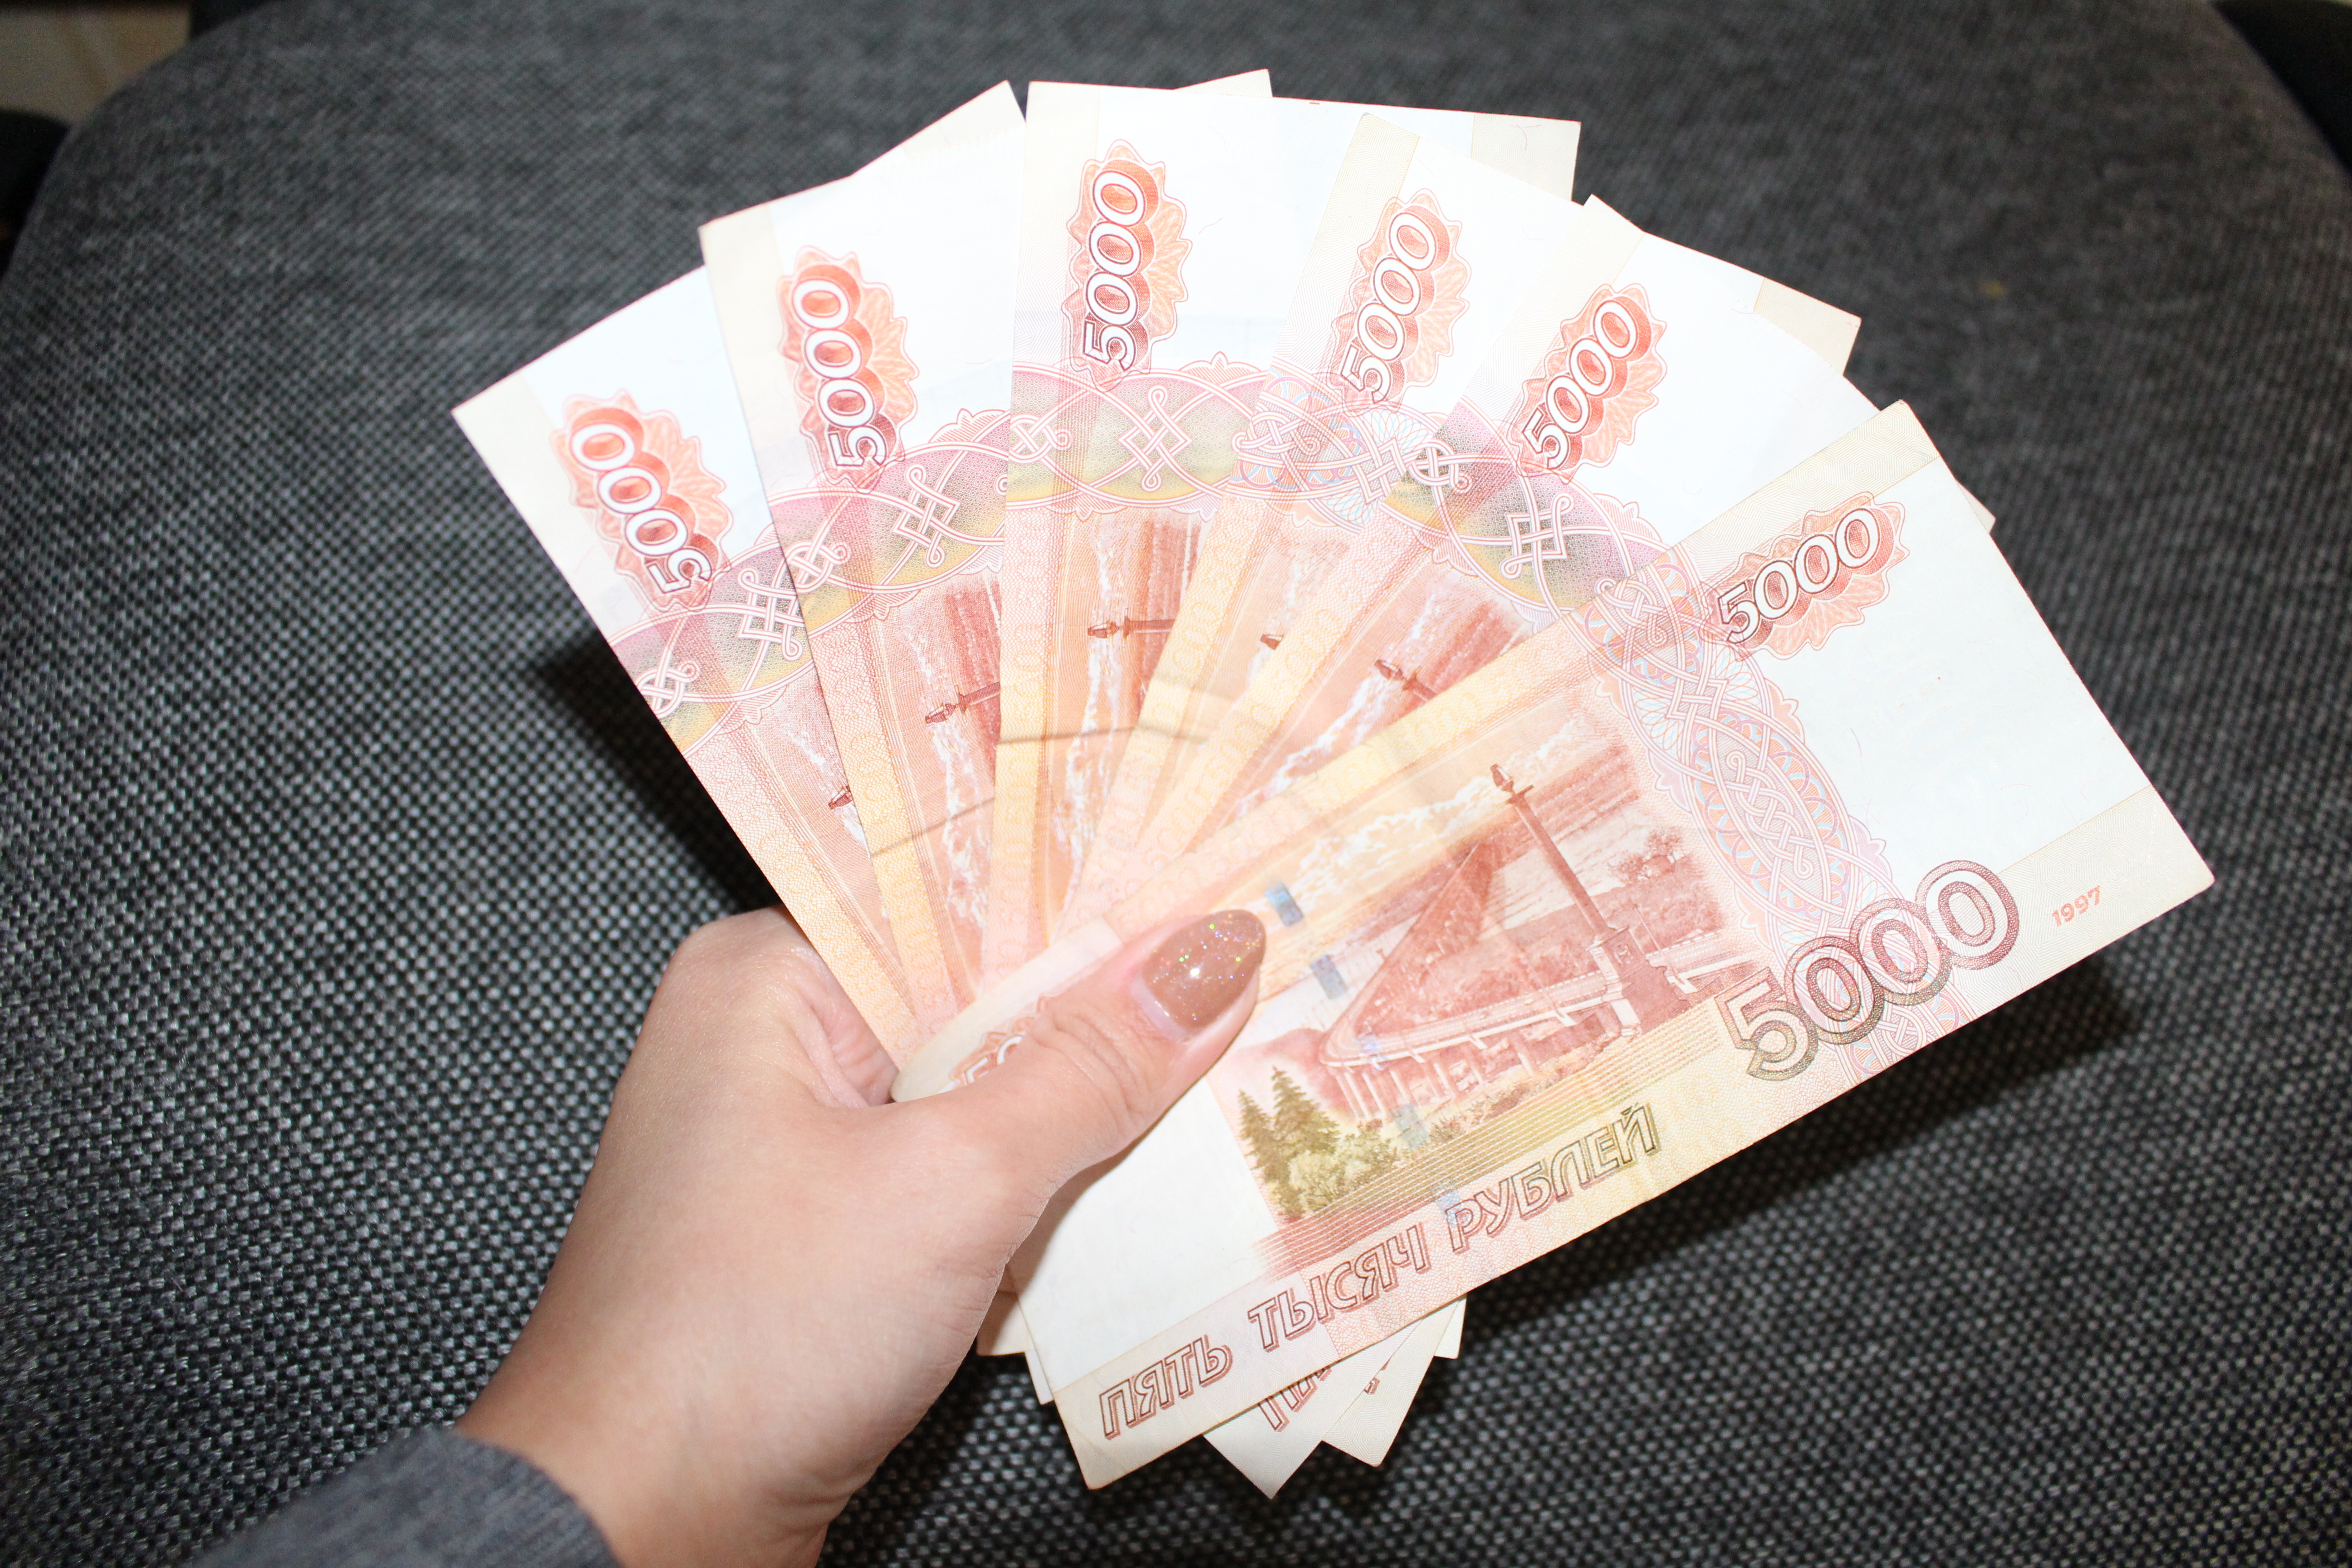 40000 российских рублей